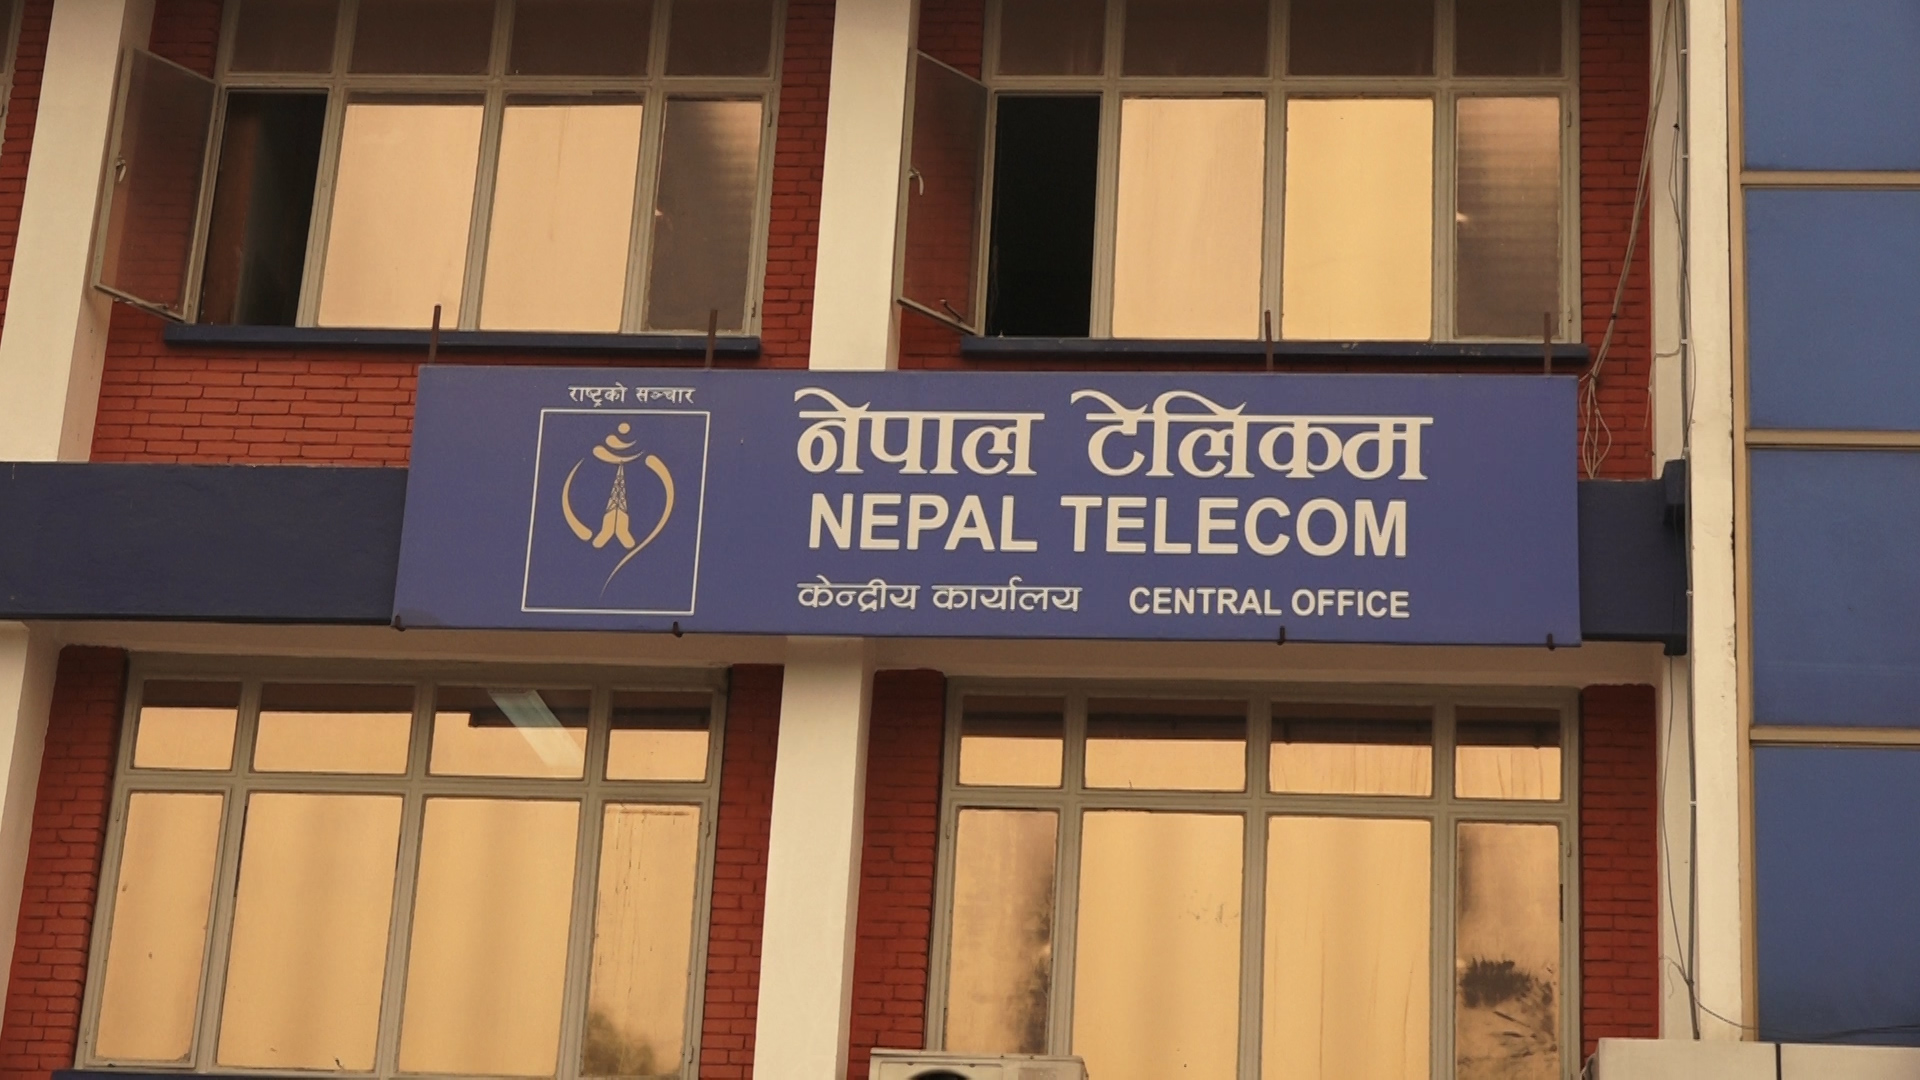 नेपाल टेलिकमले प्रतिशेयर ४० रुपैयाँका दरले नगद लाभांश दिने